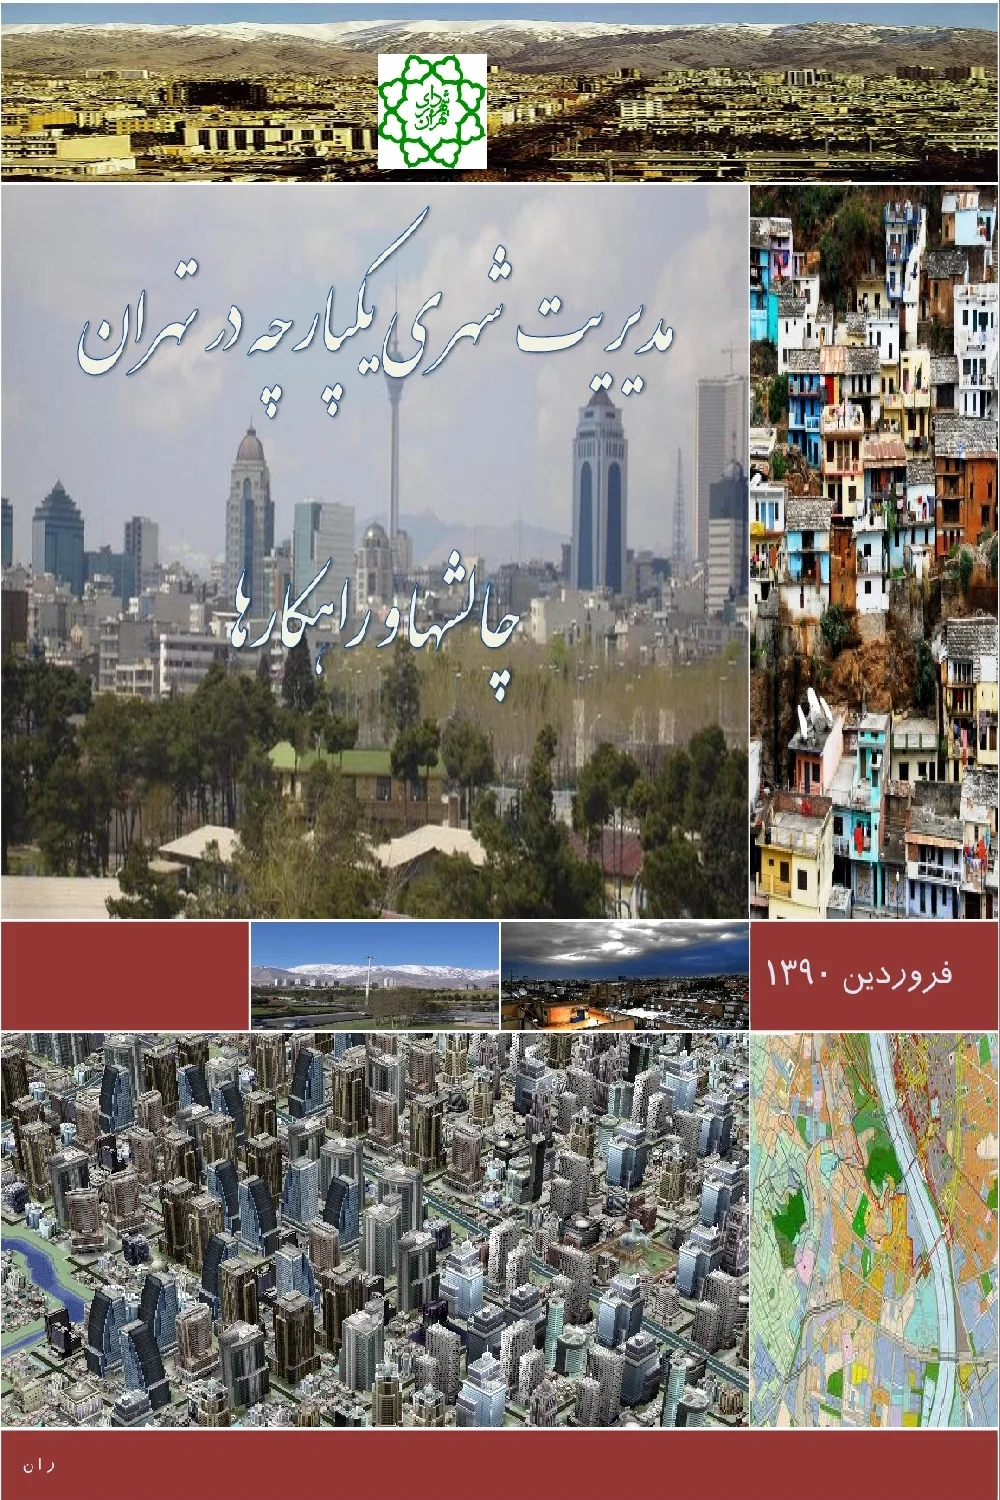 مدیریت شهری یکپارچه در تهران: چالشها و راهکارها